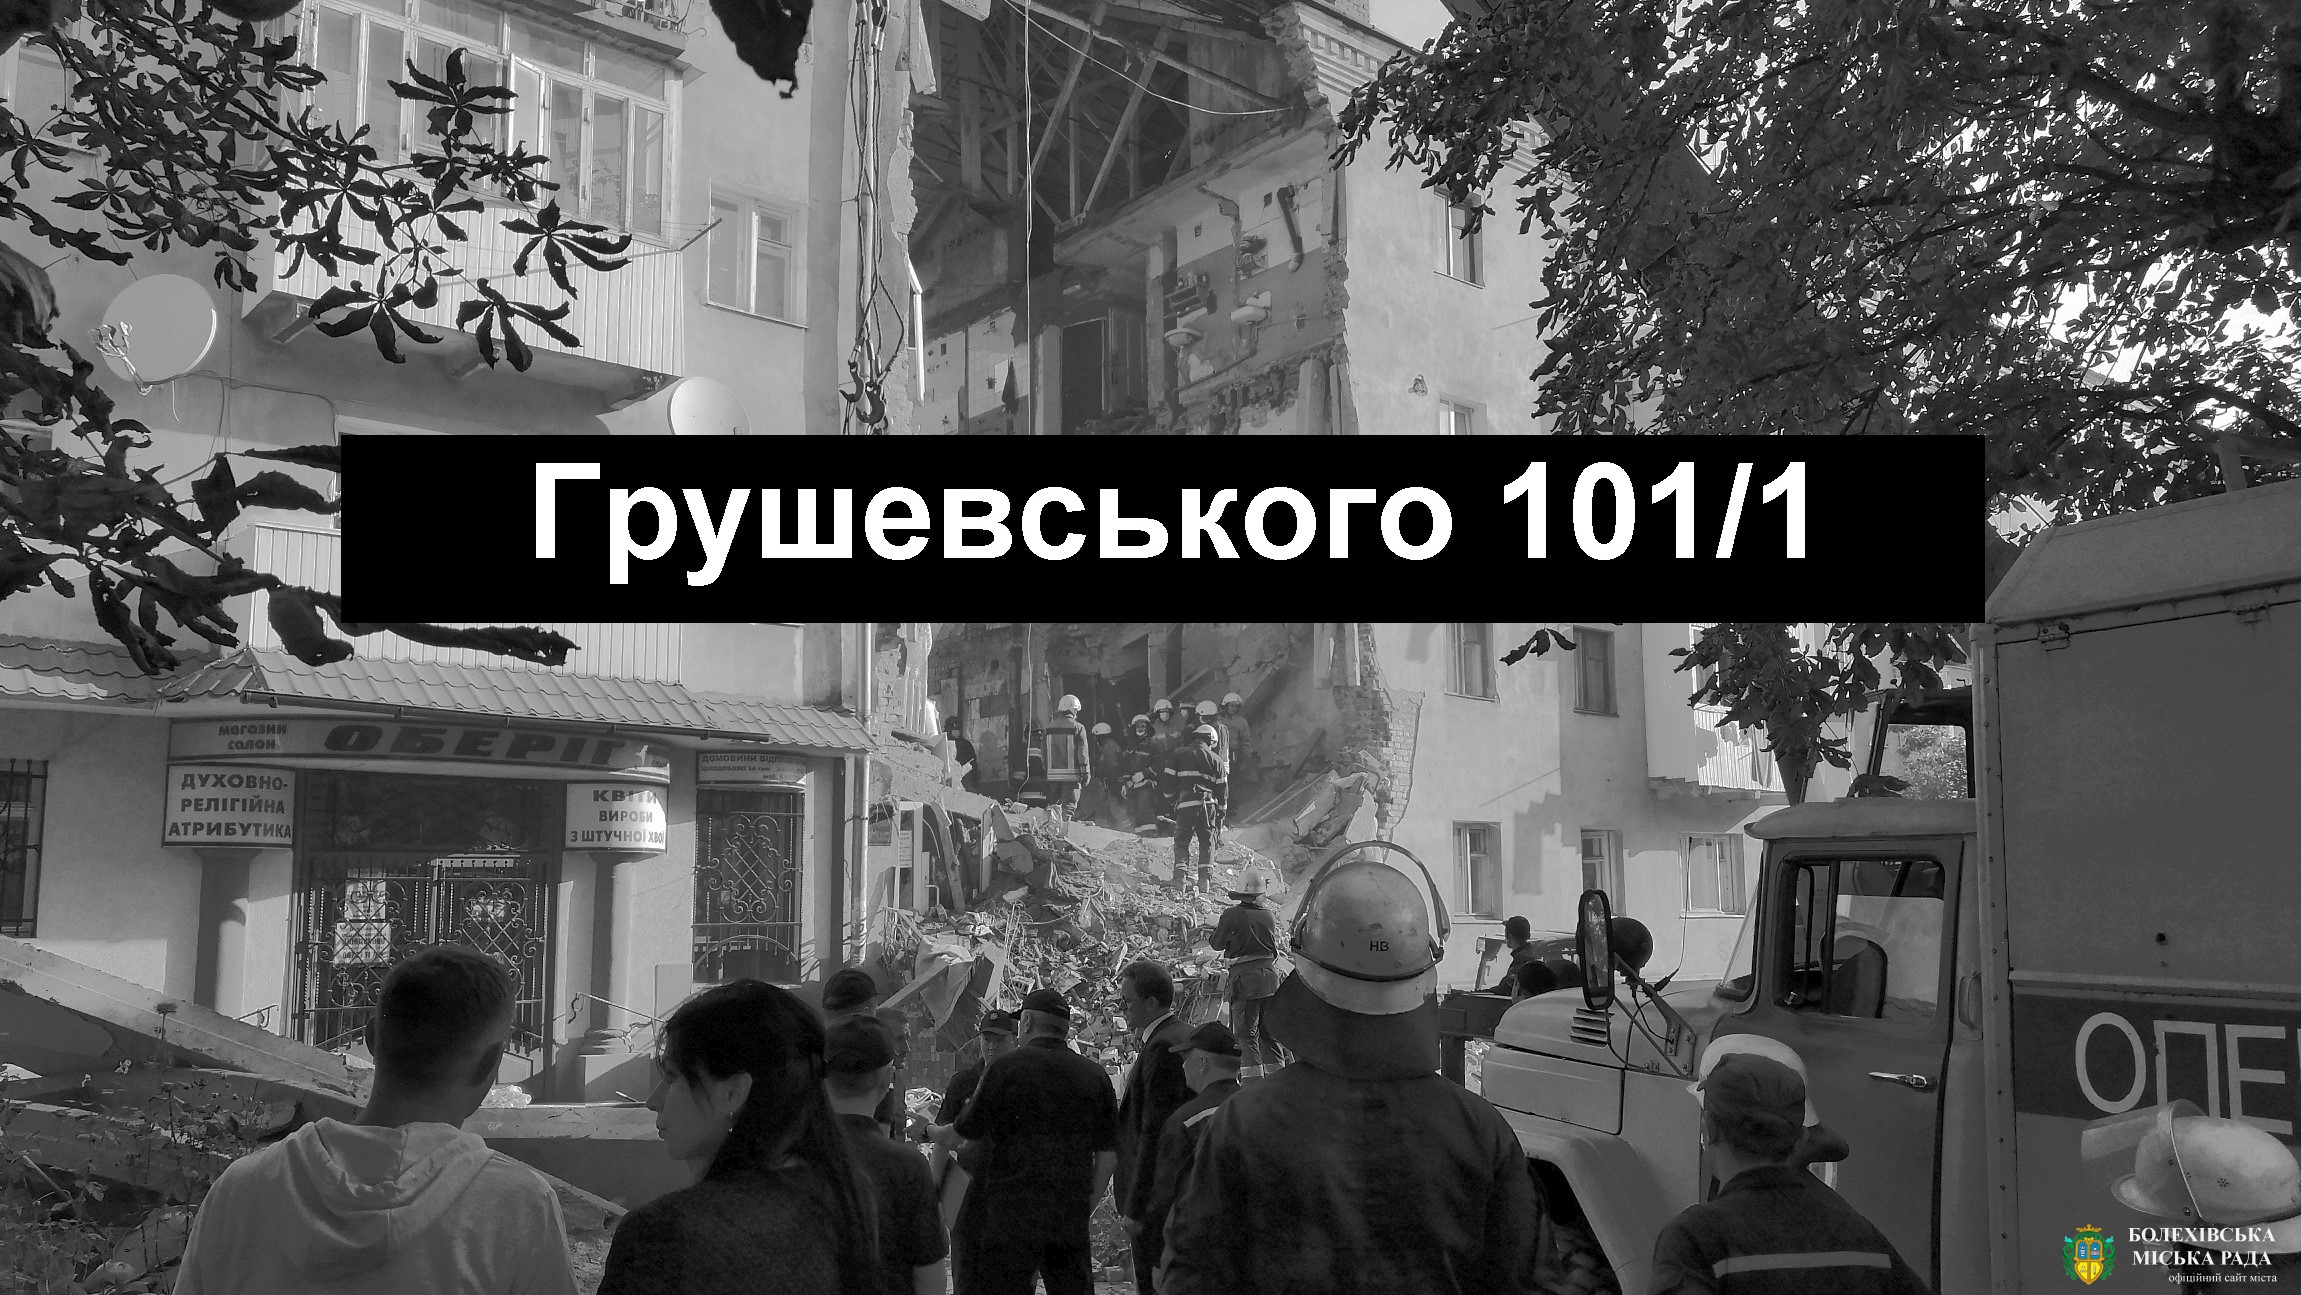 Шановні жителі Болехівщини! Просимо надати допомогу та підтримку постраждалим сім’ям з Дрогобича